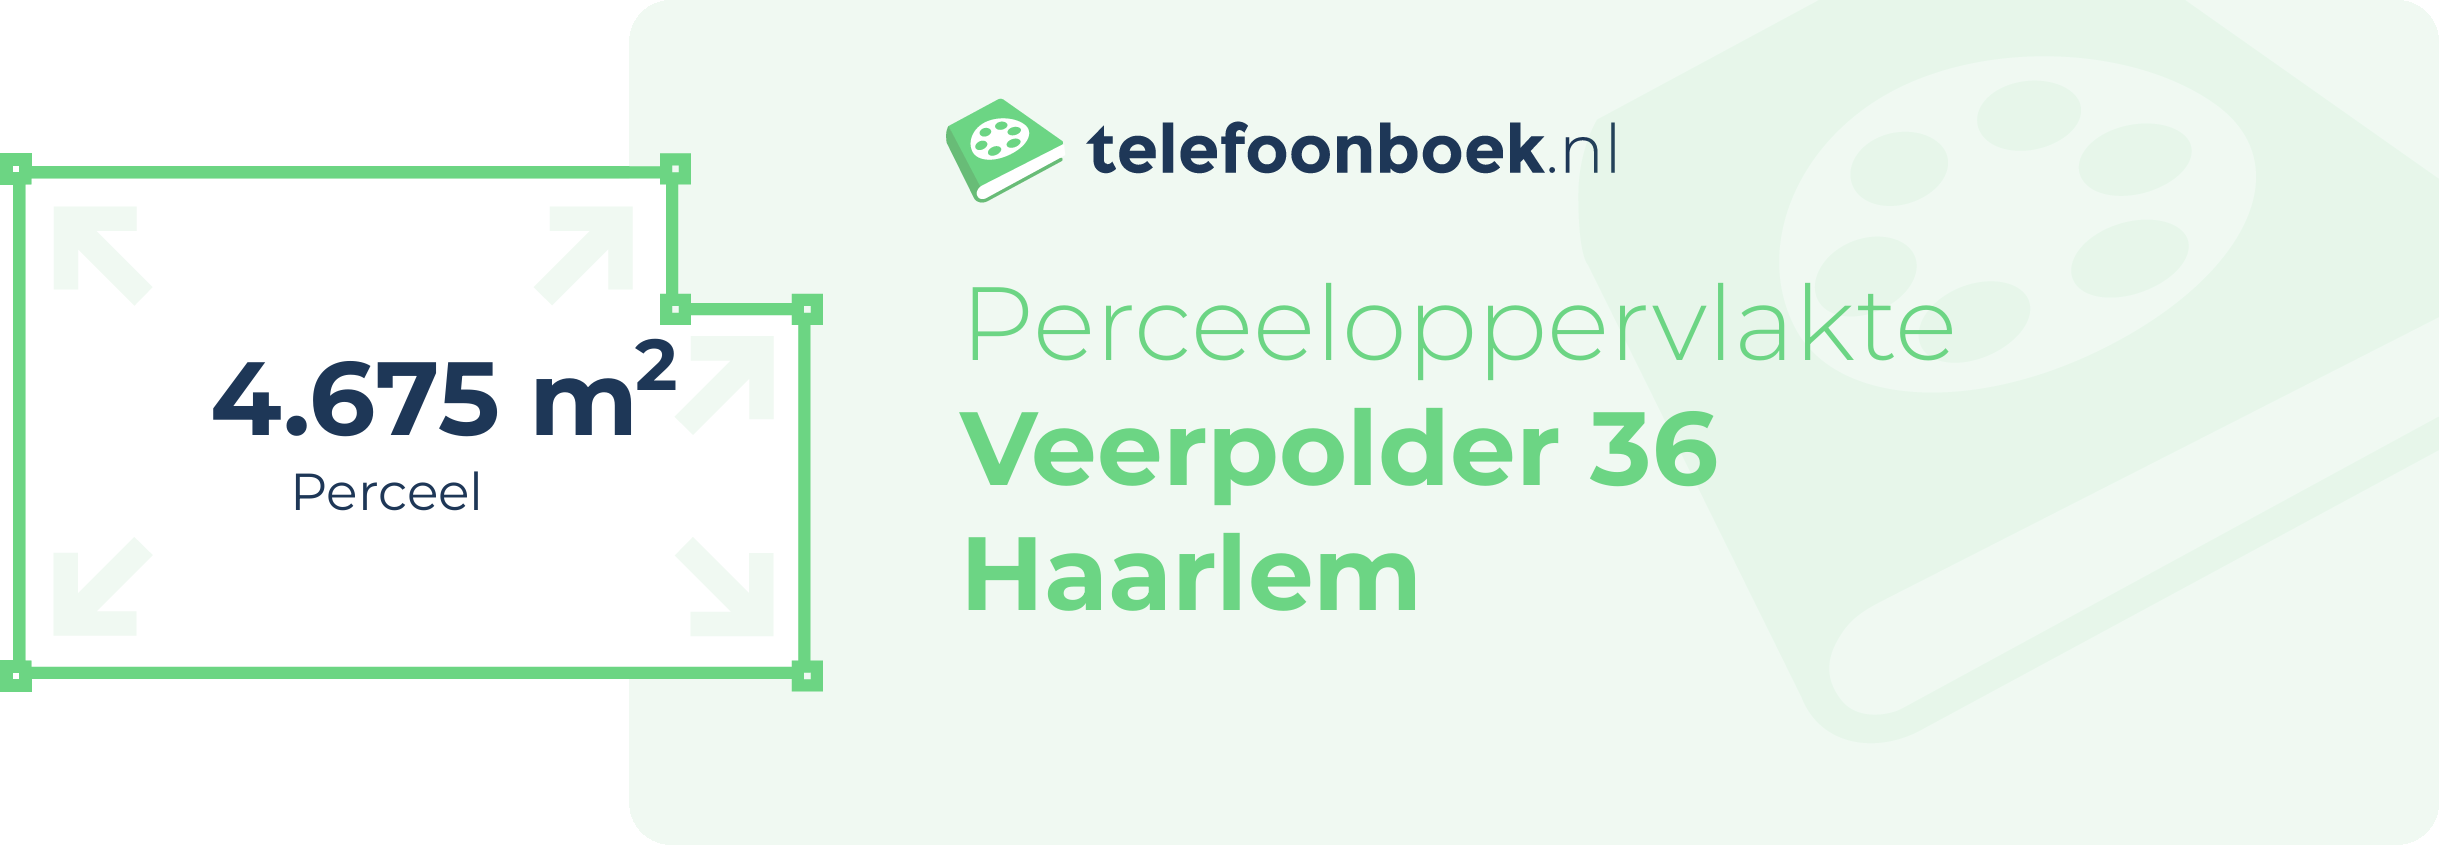 Perceeloppervlakte Veerpolder 36 Haarlem